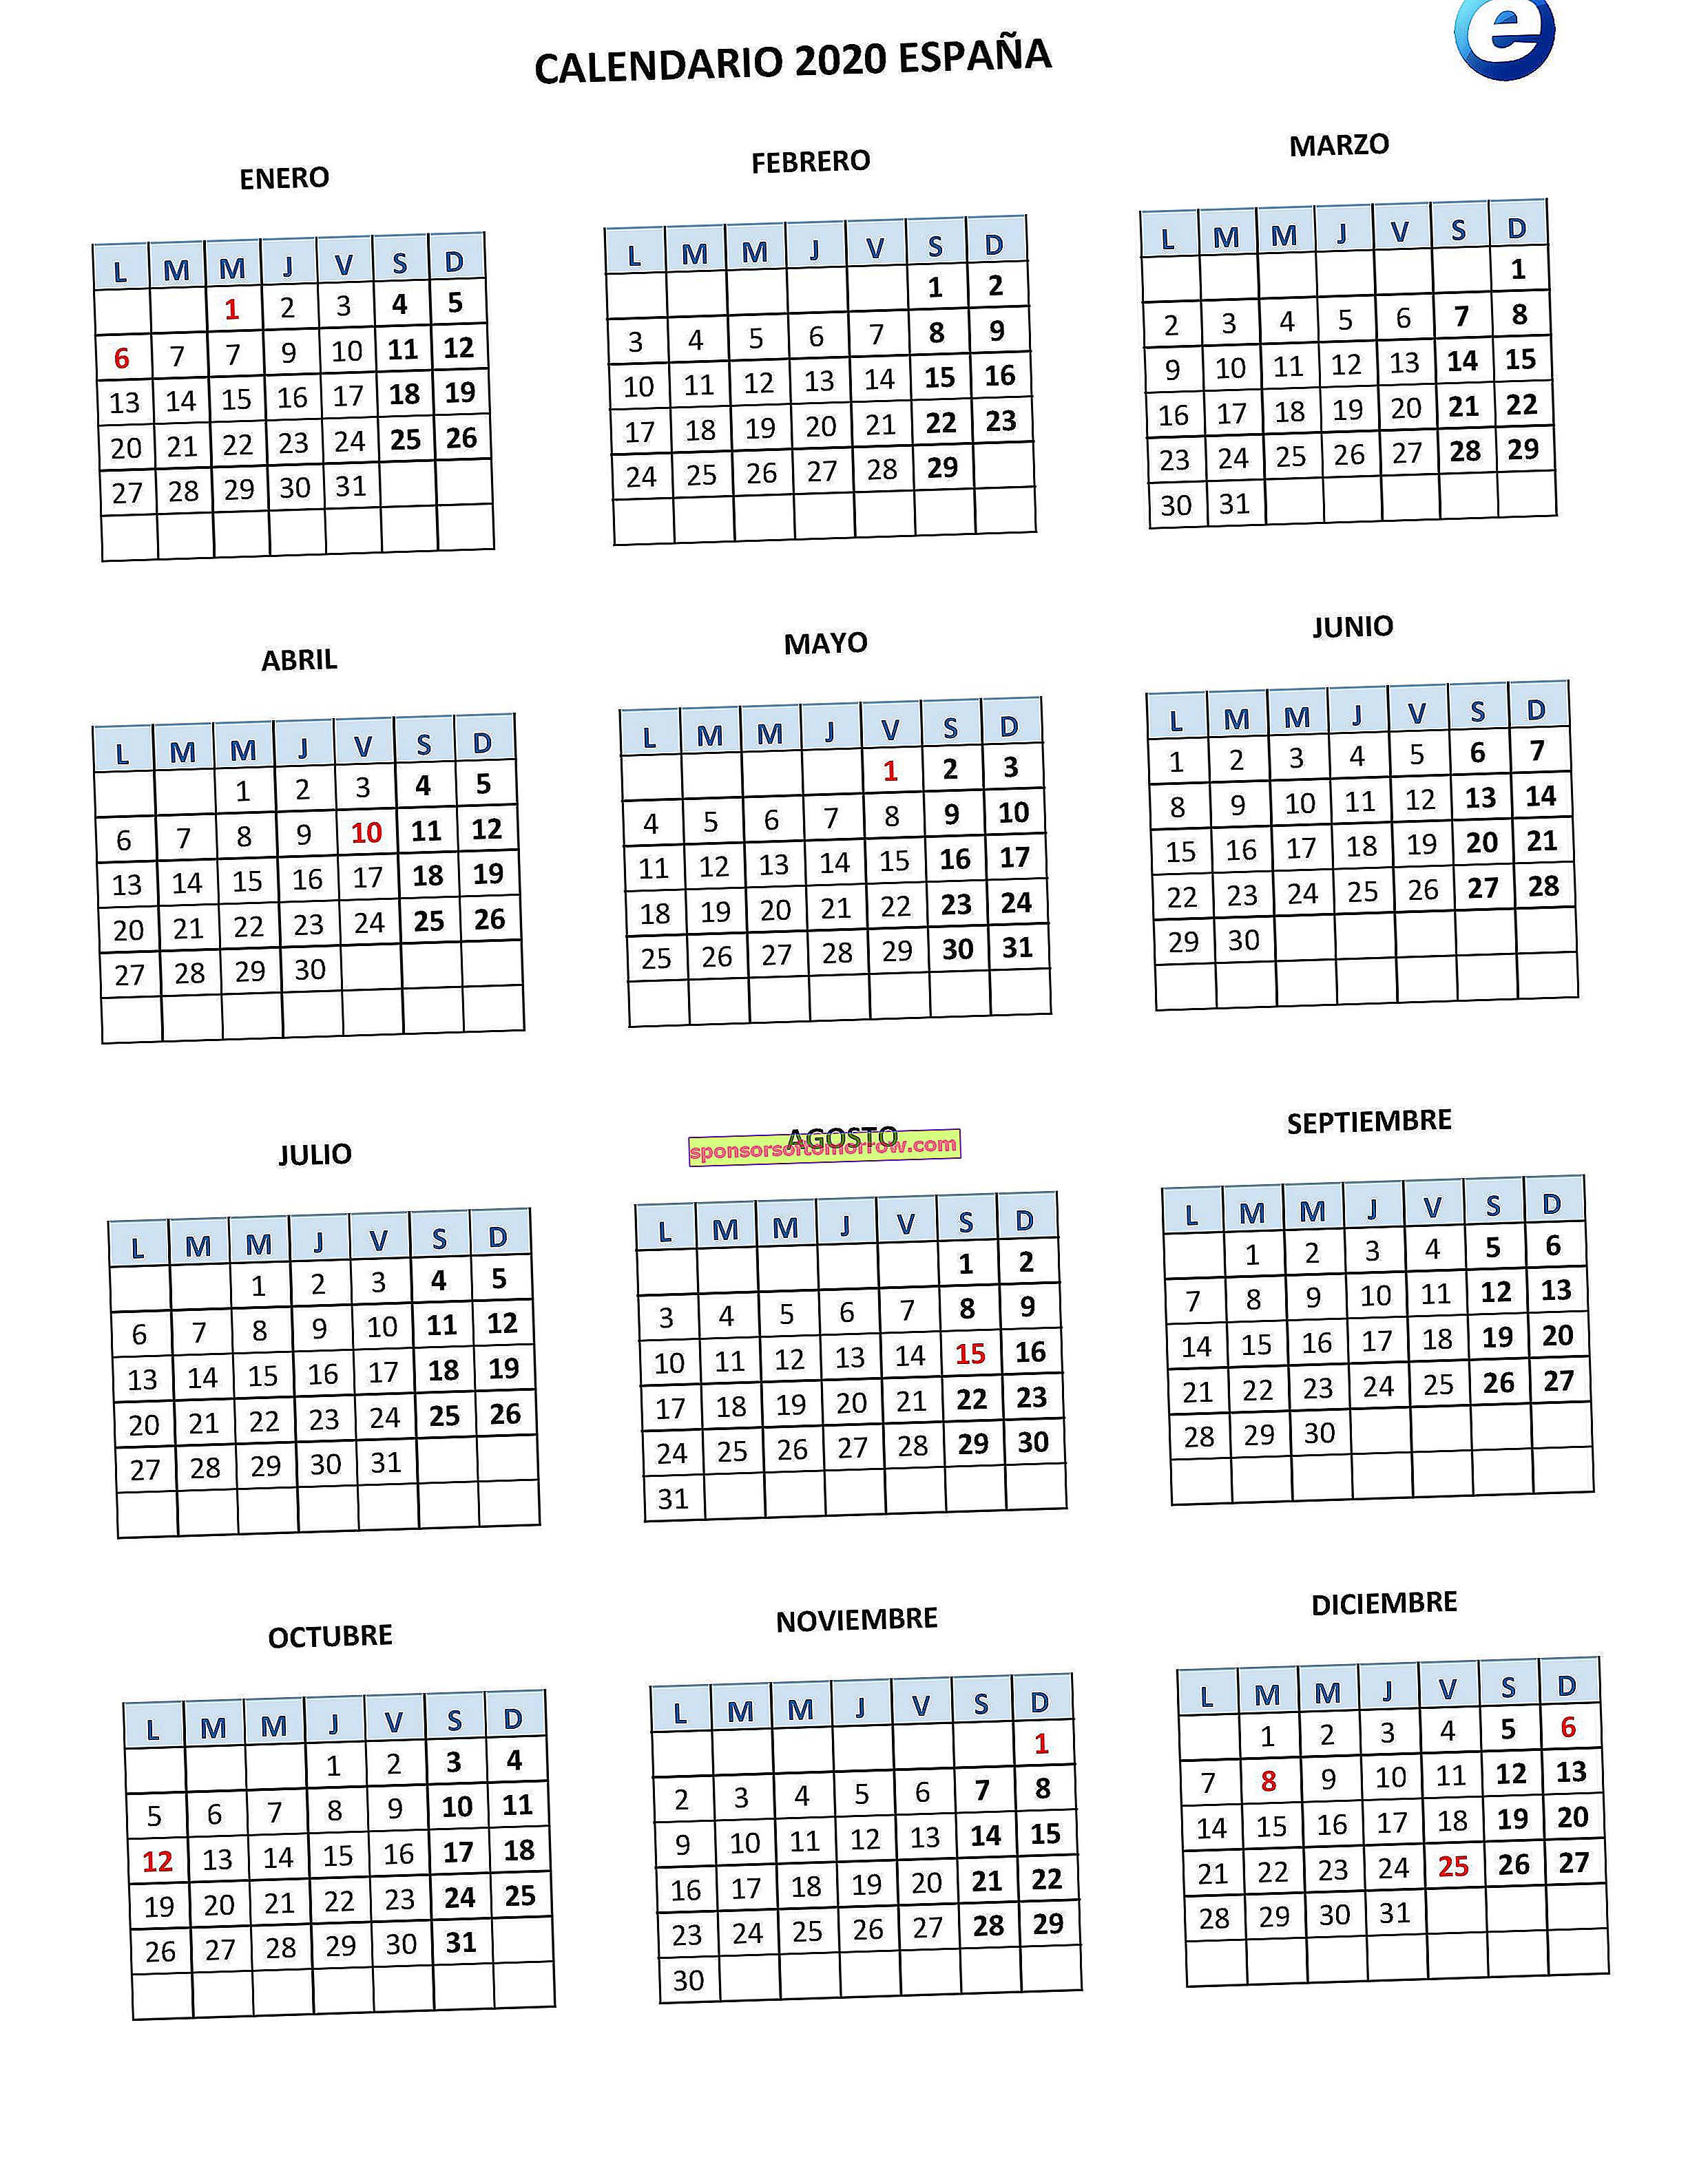 Calendar-Labor-2020-Spain